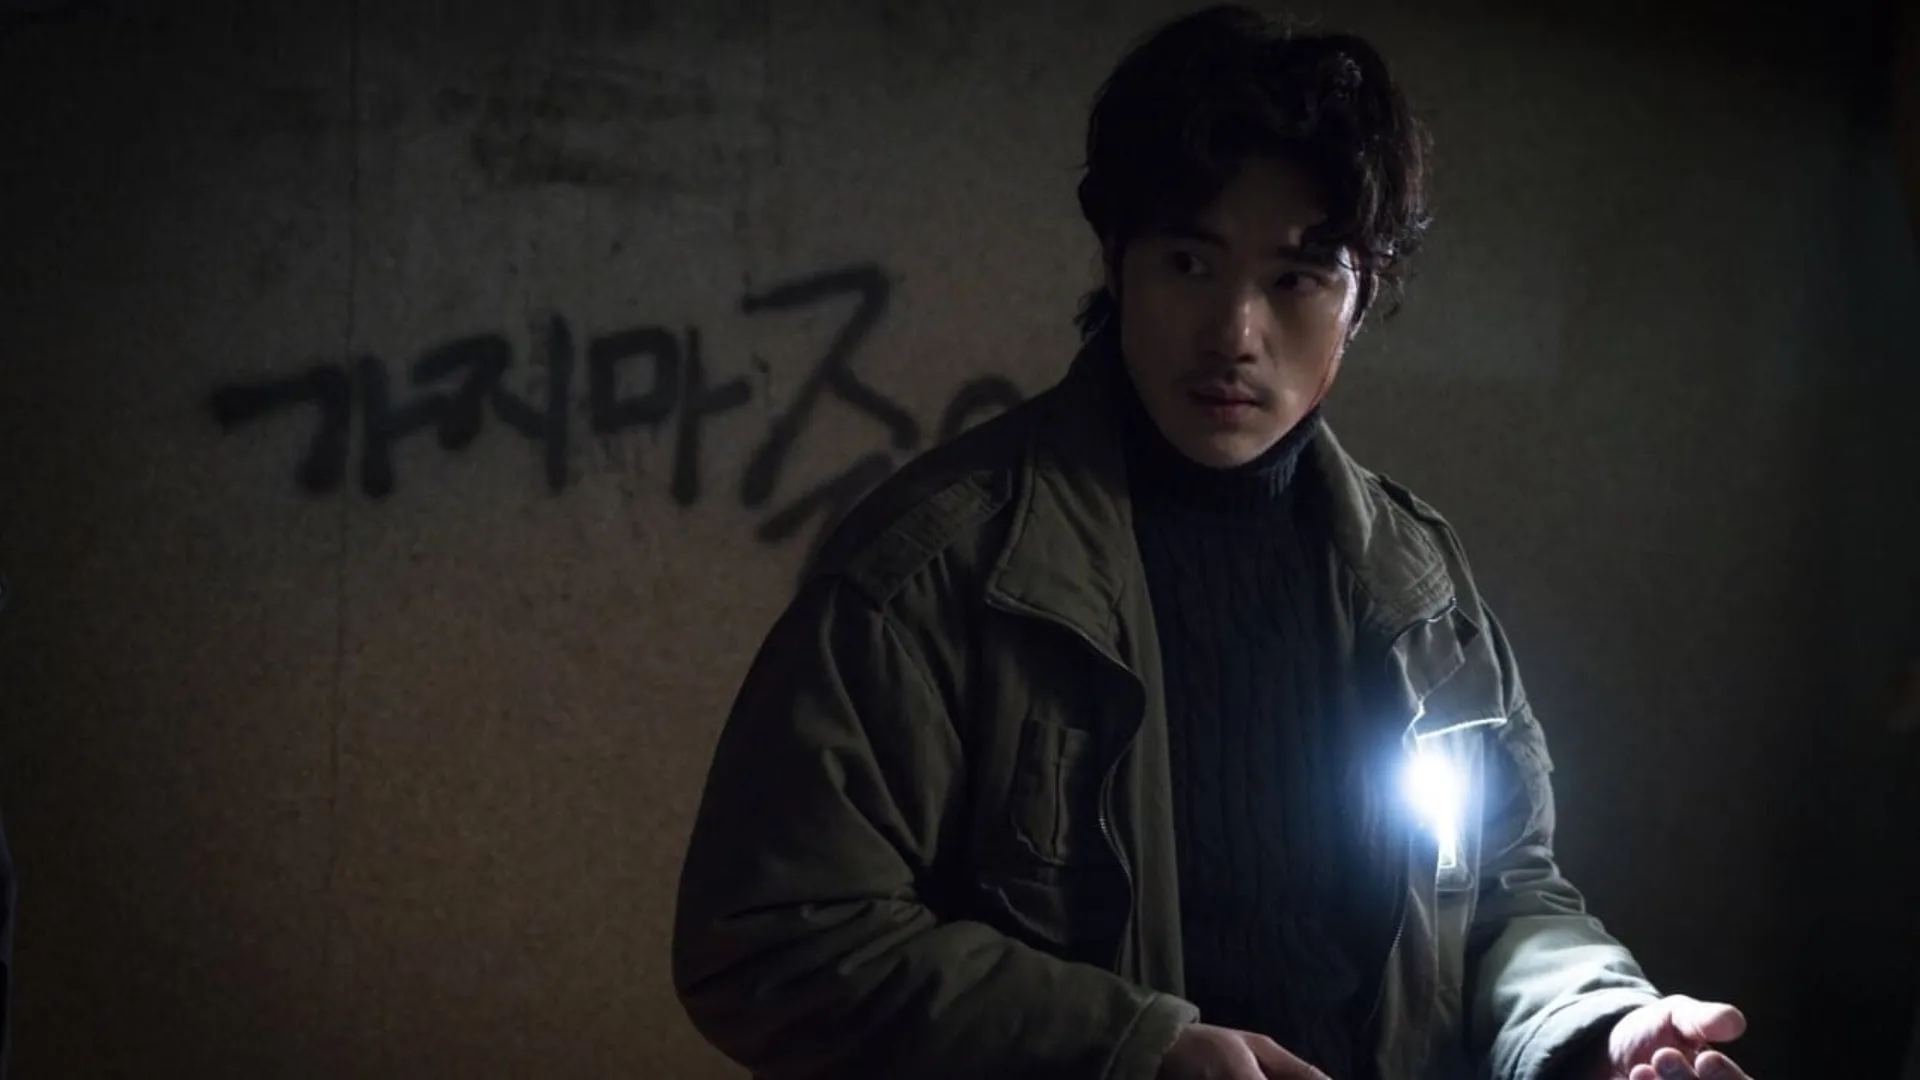 Guimoon La puerta del infierno película de terror  coreana